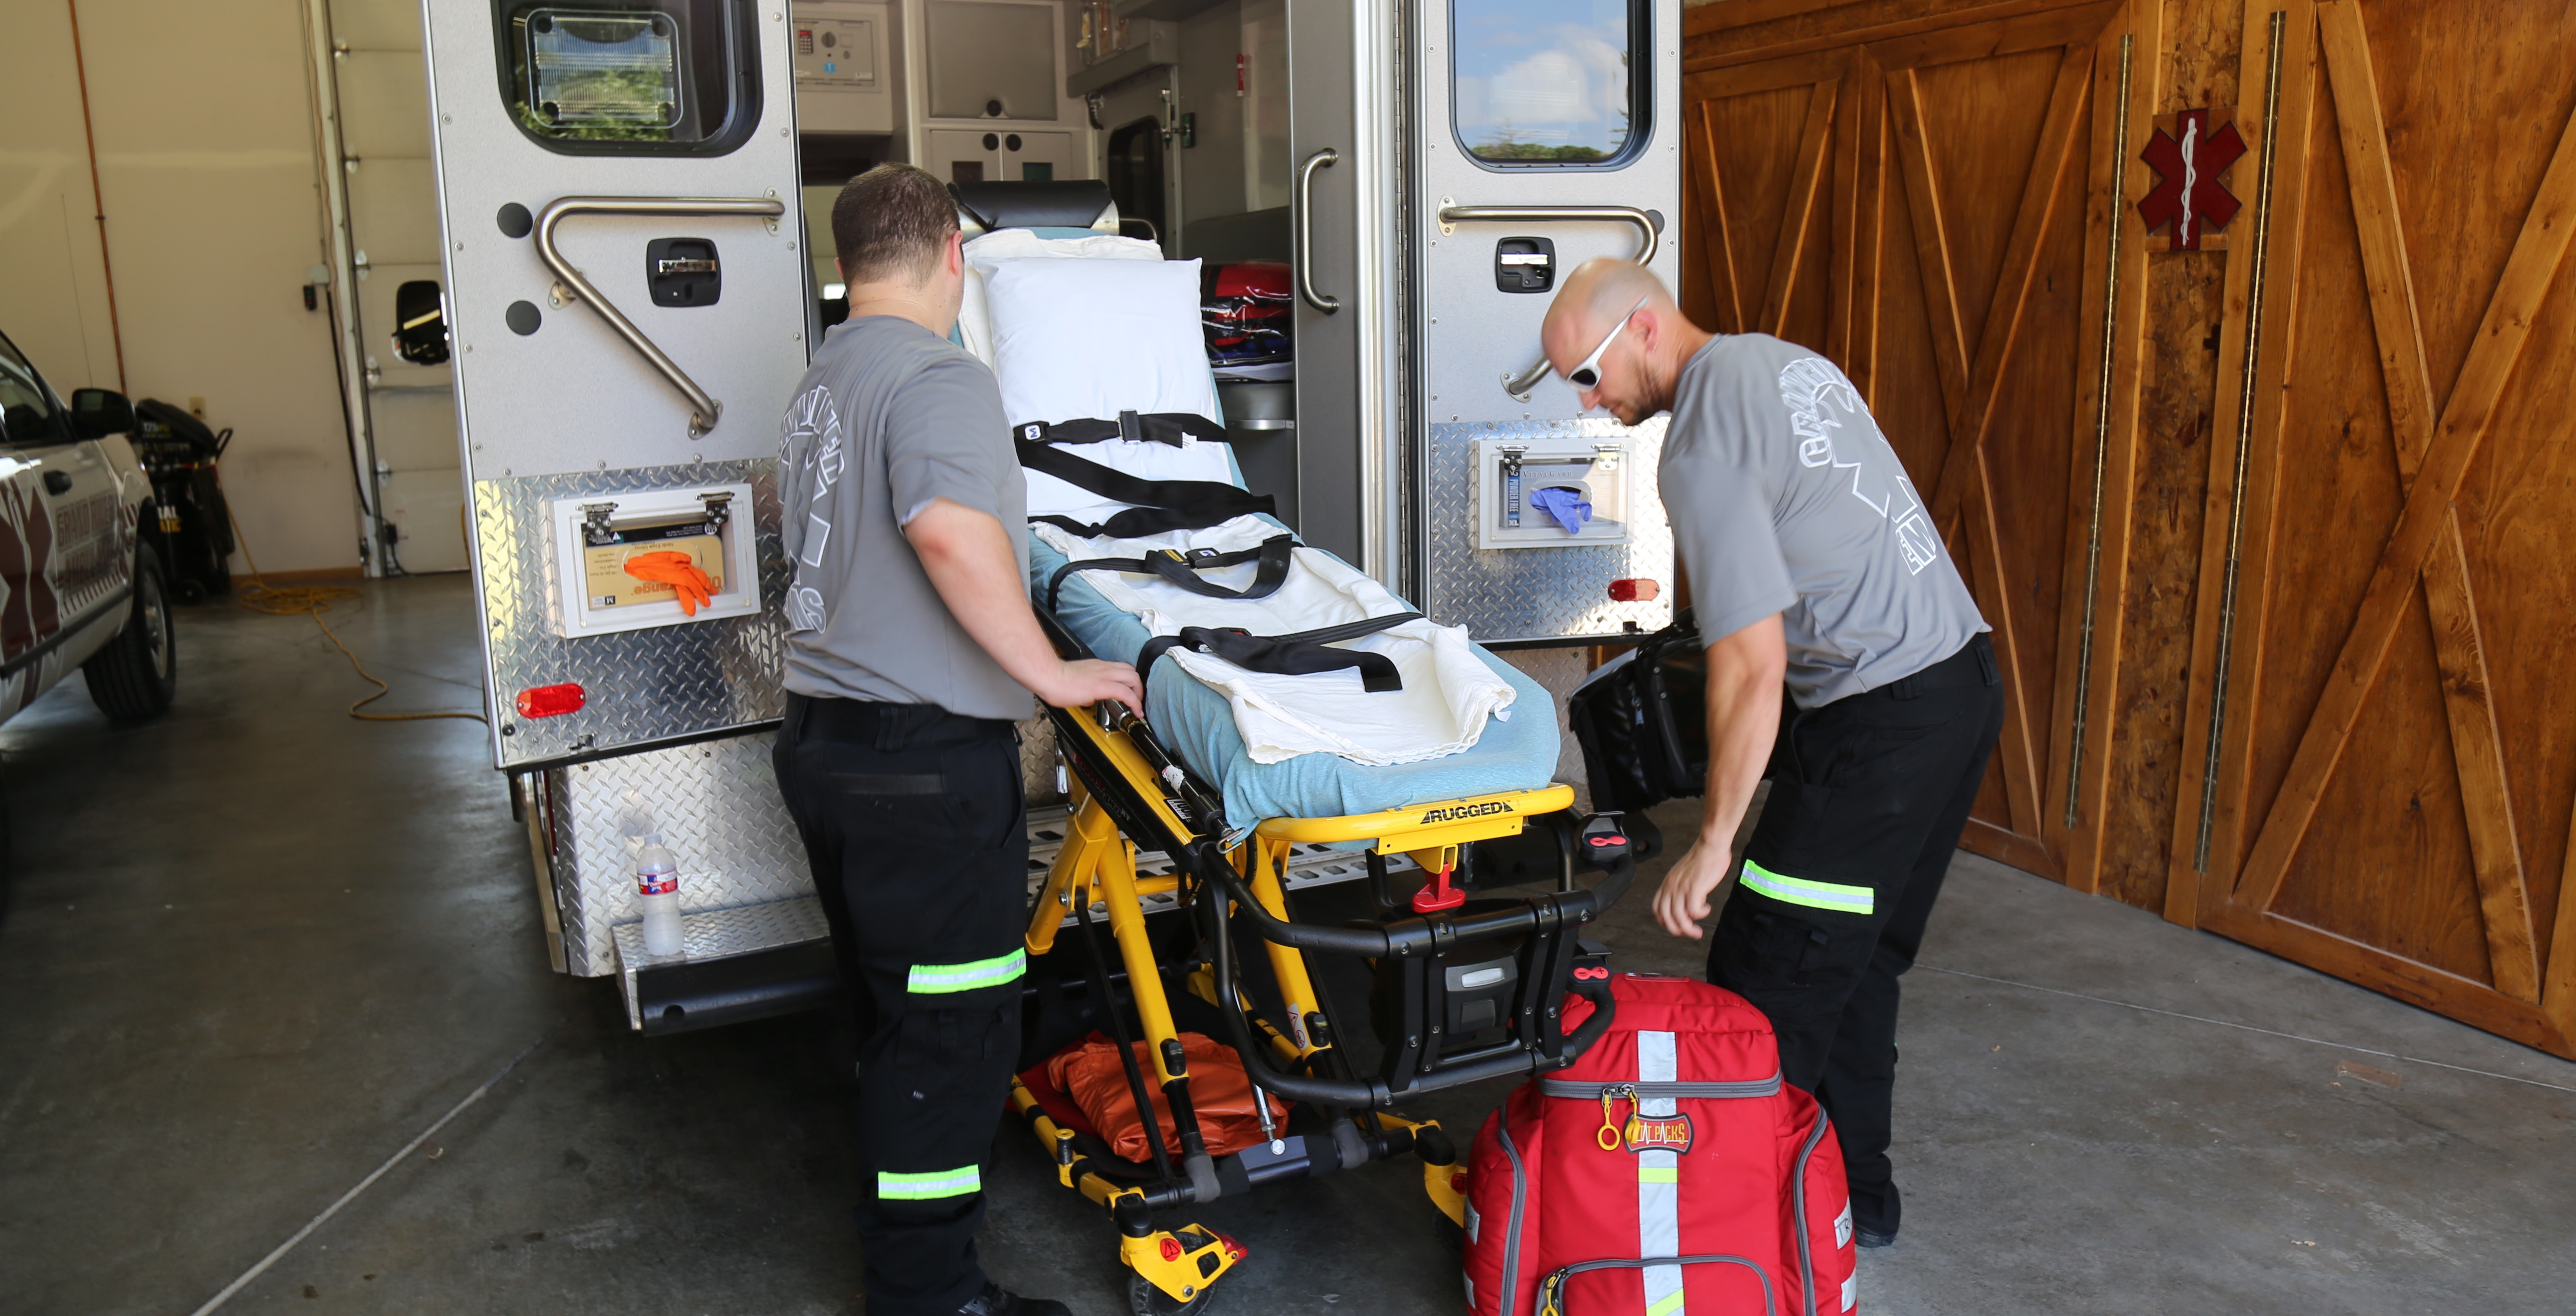 Grand River Ambulance EMS crew testing equipment